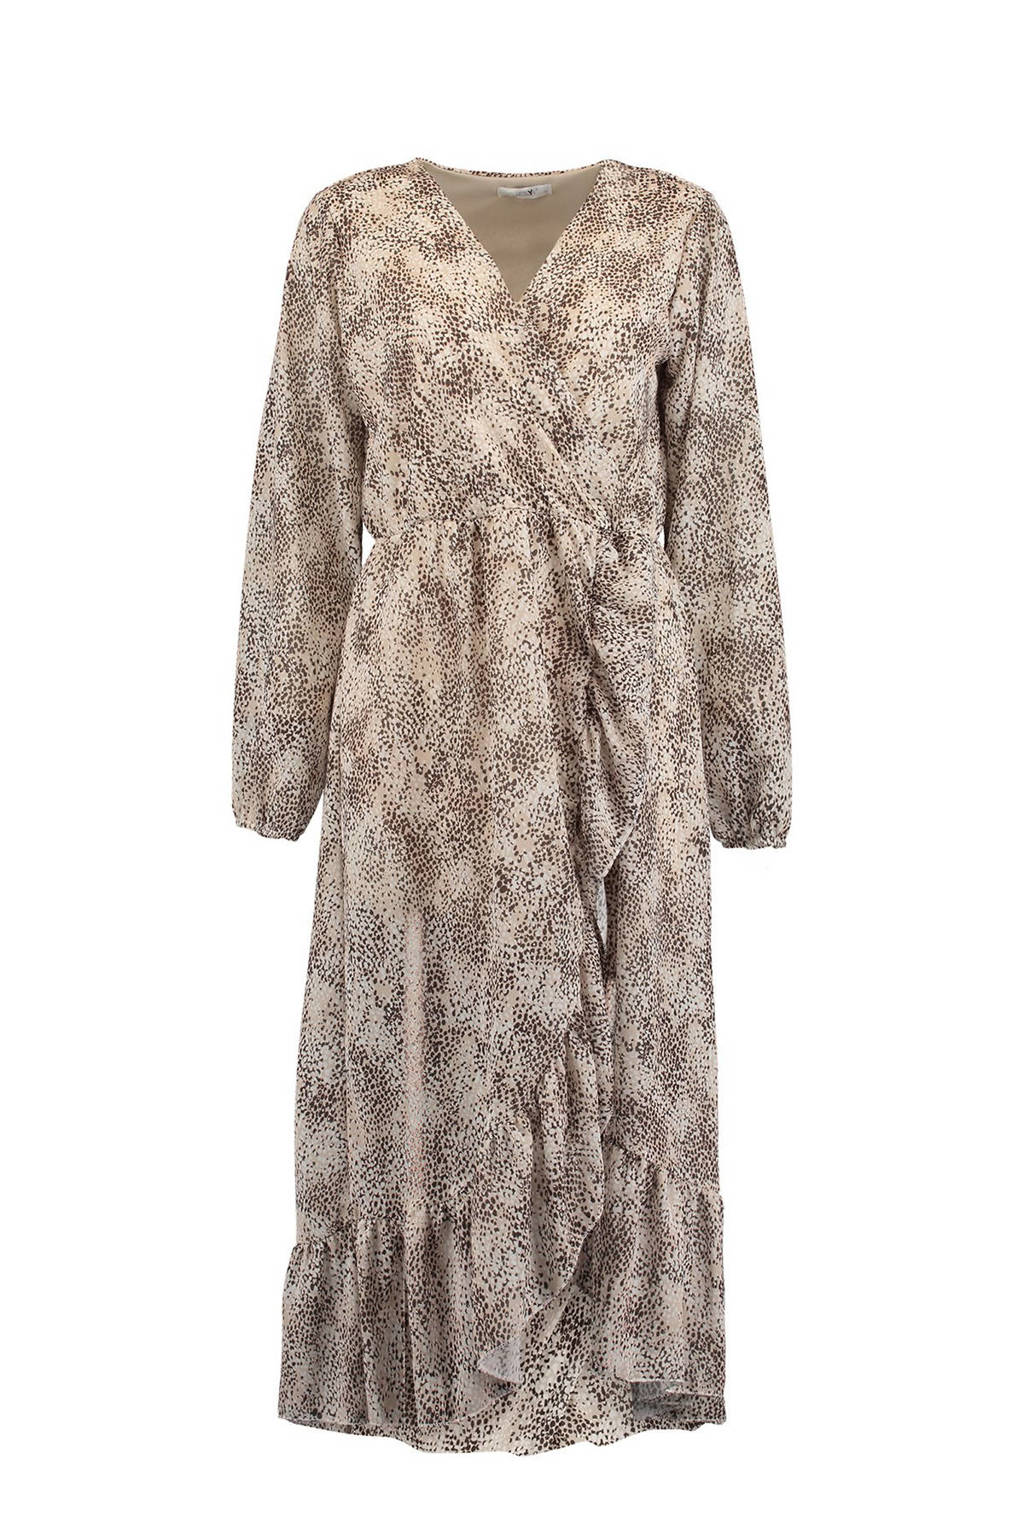 Beige dames Hailys jurk Sue van polyester met all over print, lange mouwen en elastische inzet